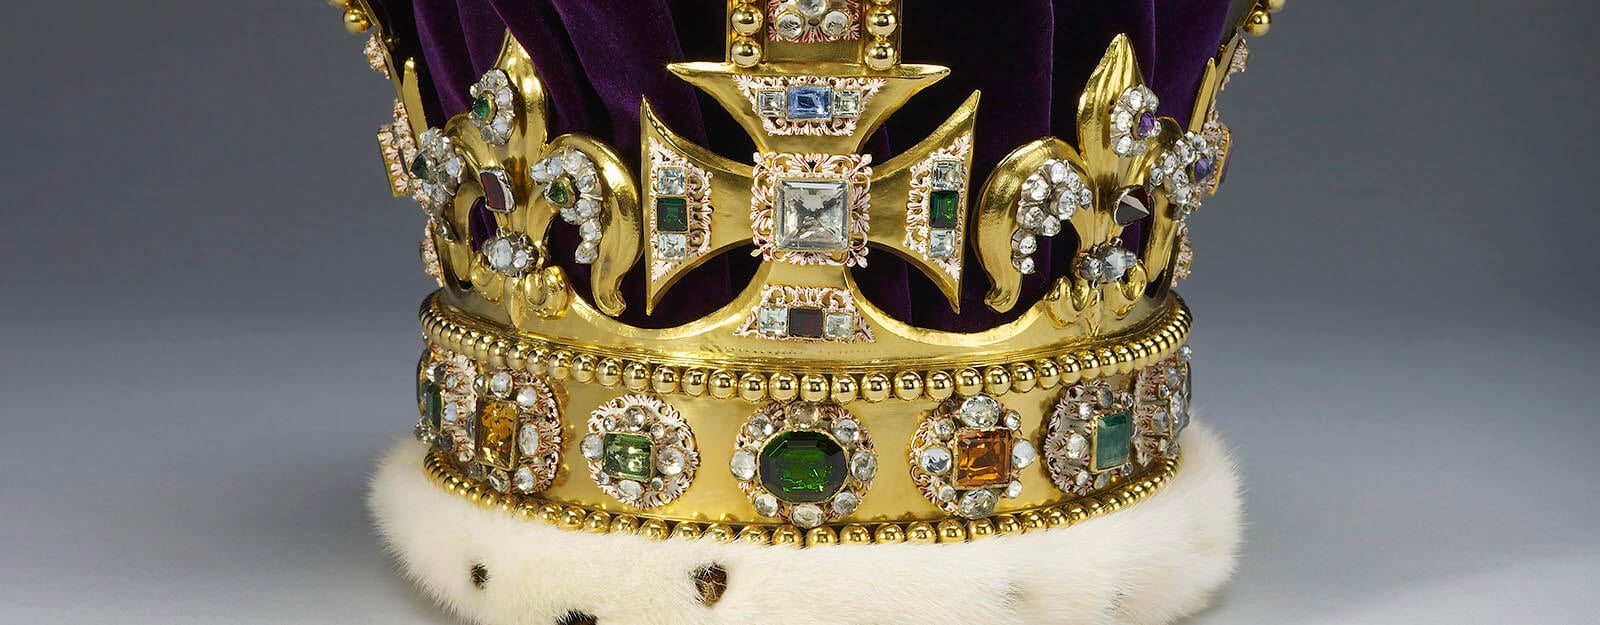 Золотая корона украшена бриллиантами, рубинами, аметистами и сапфирами.  У него фиолетовая бархатная шапочка.